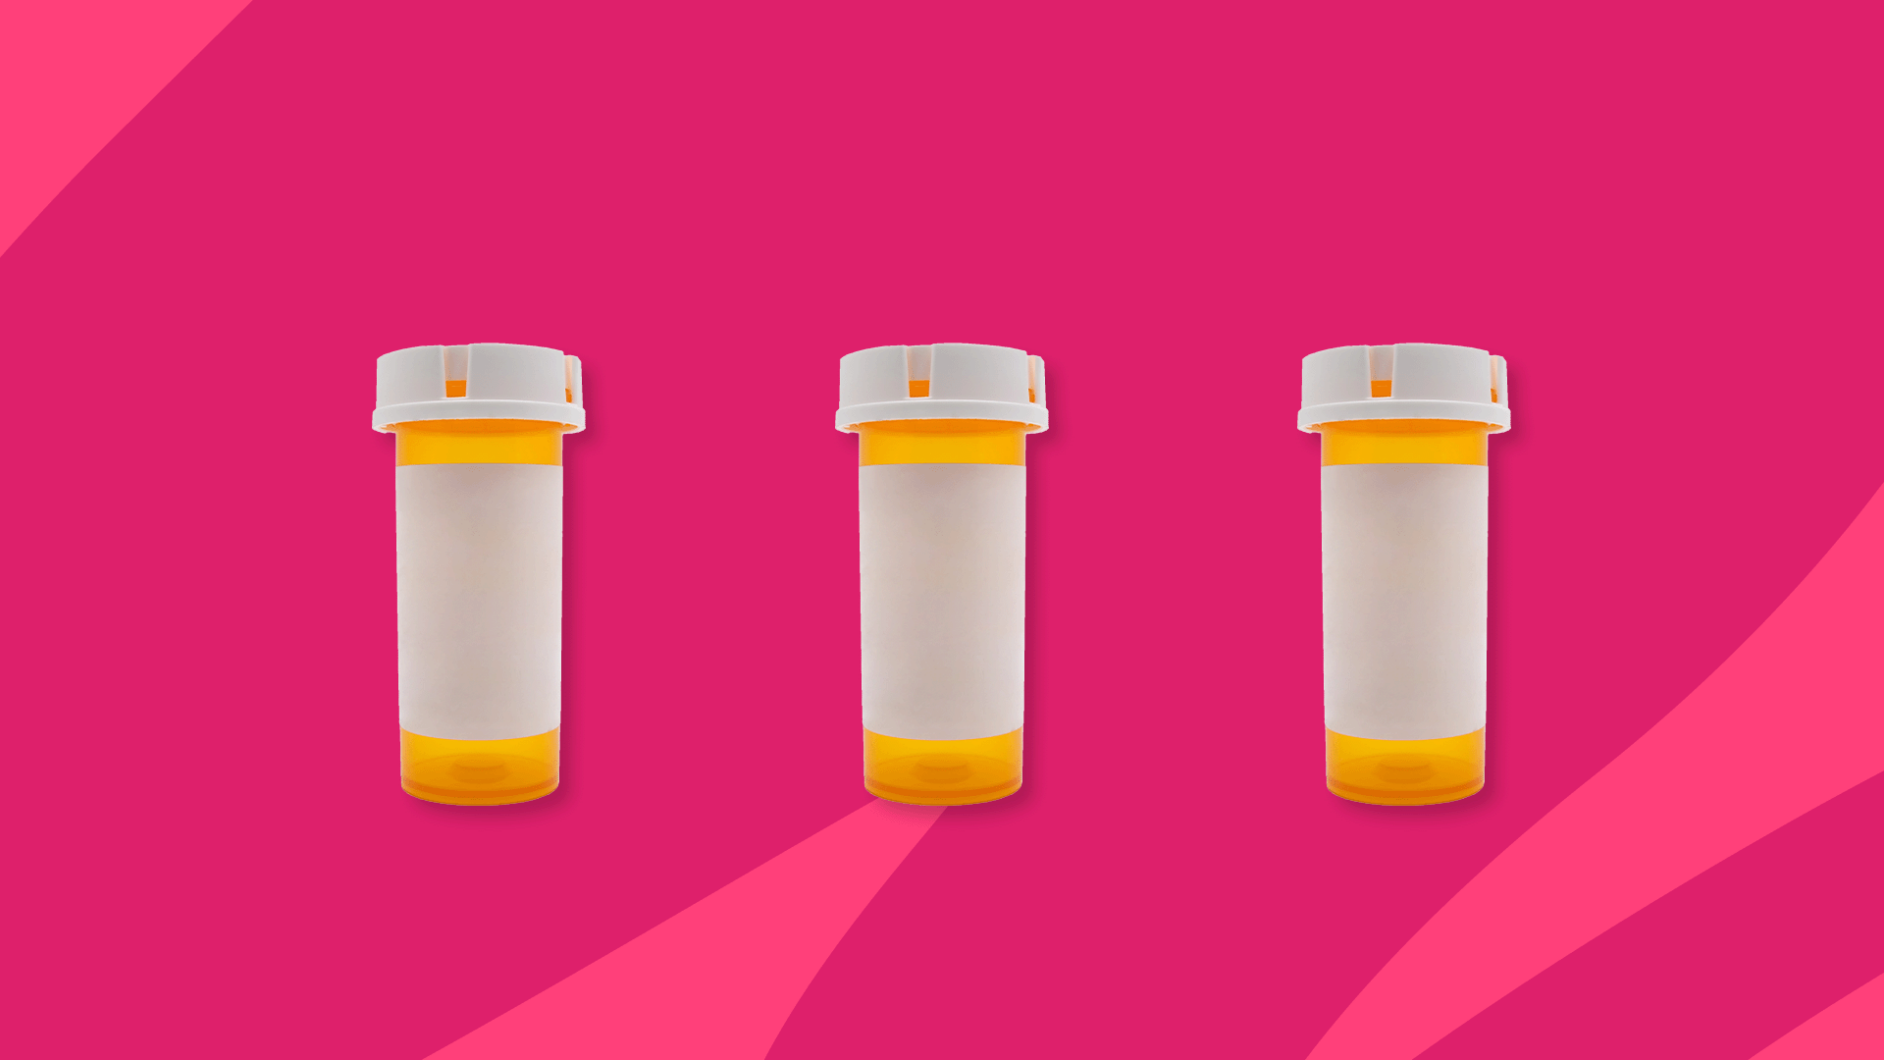 Three Rx pill bottles: Biktarvy alternatives